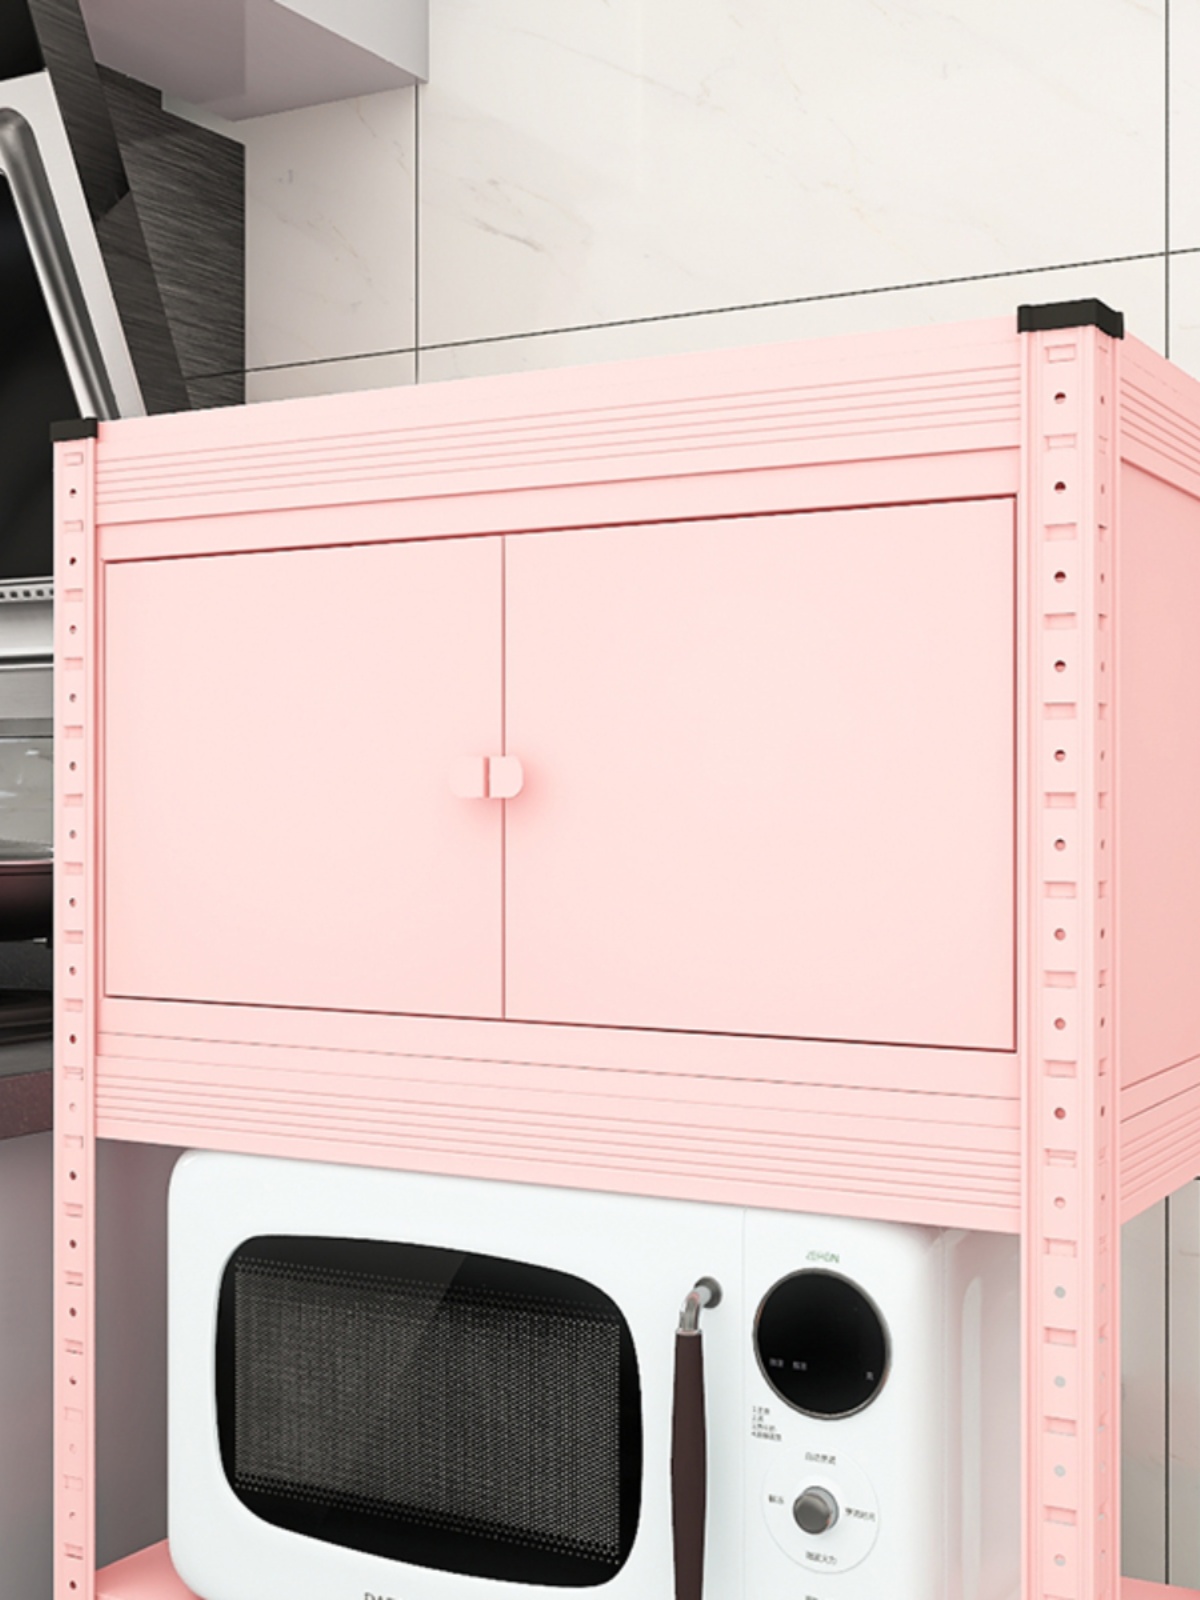 新品柜门厨房置物架配件 6种颜色柜体 随时可装在峰阳置物架上